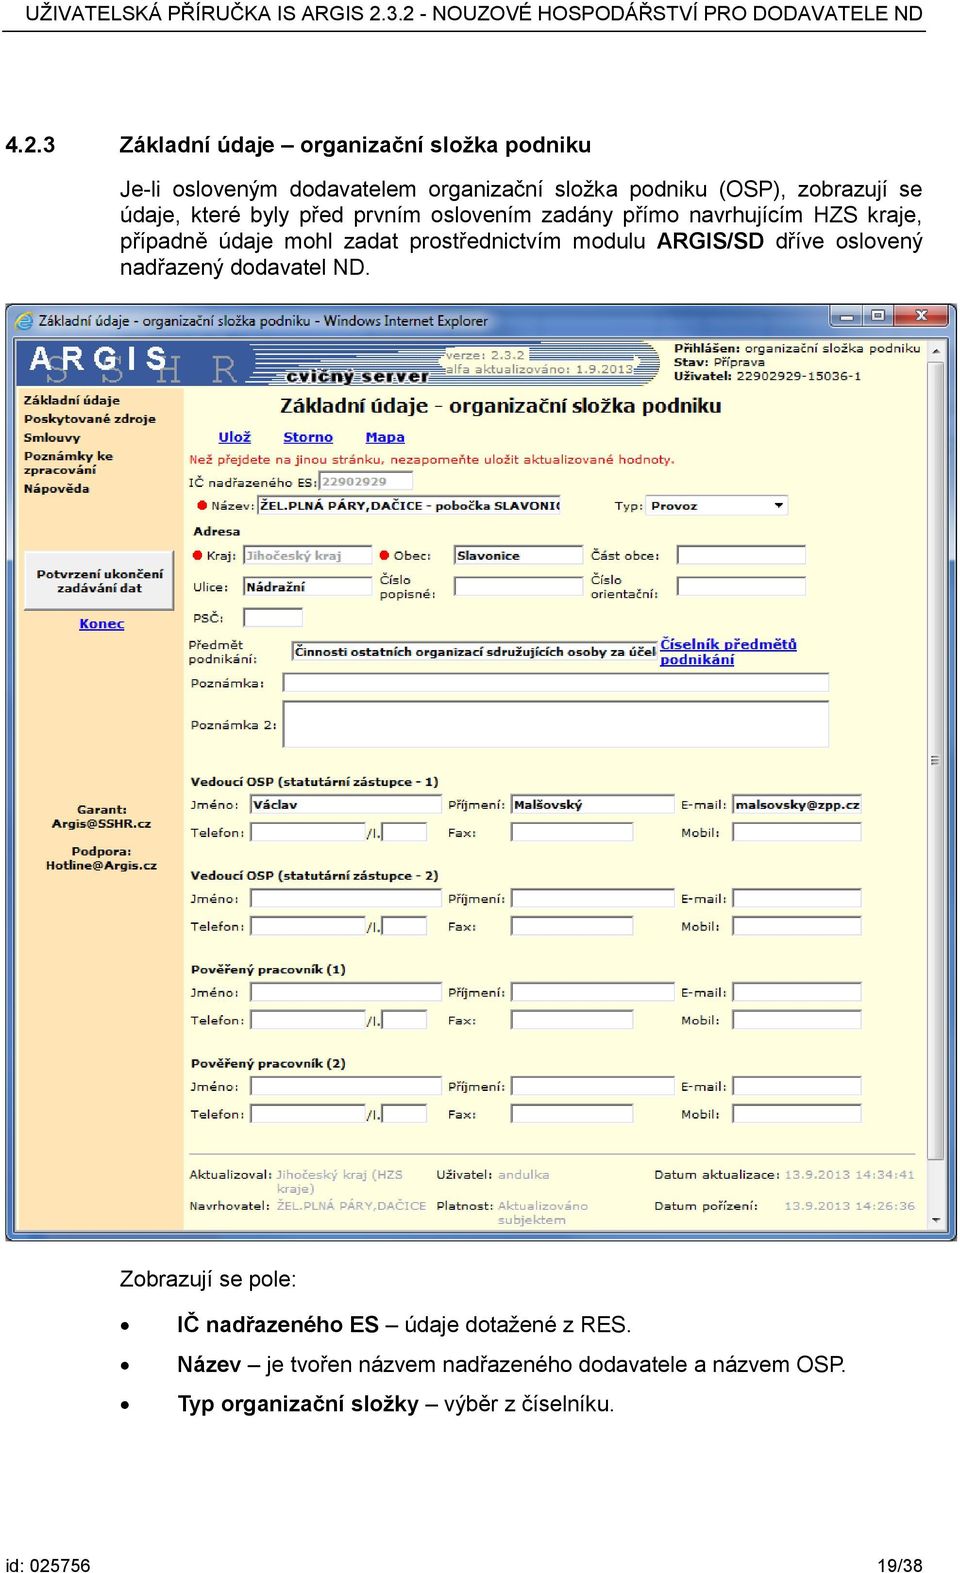 prostřednictvím modulu ARGIS/SD dříve oslovený nadřazený dodavatel ND.